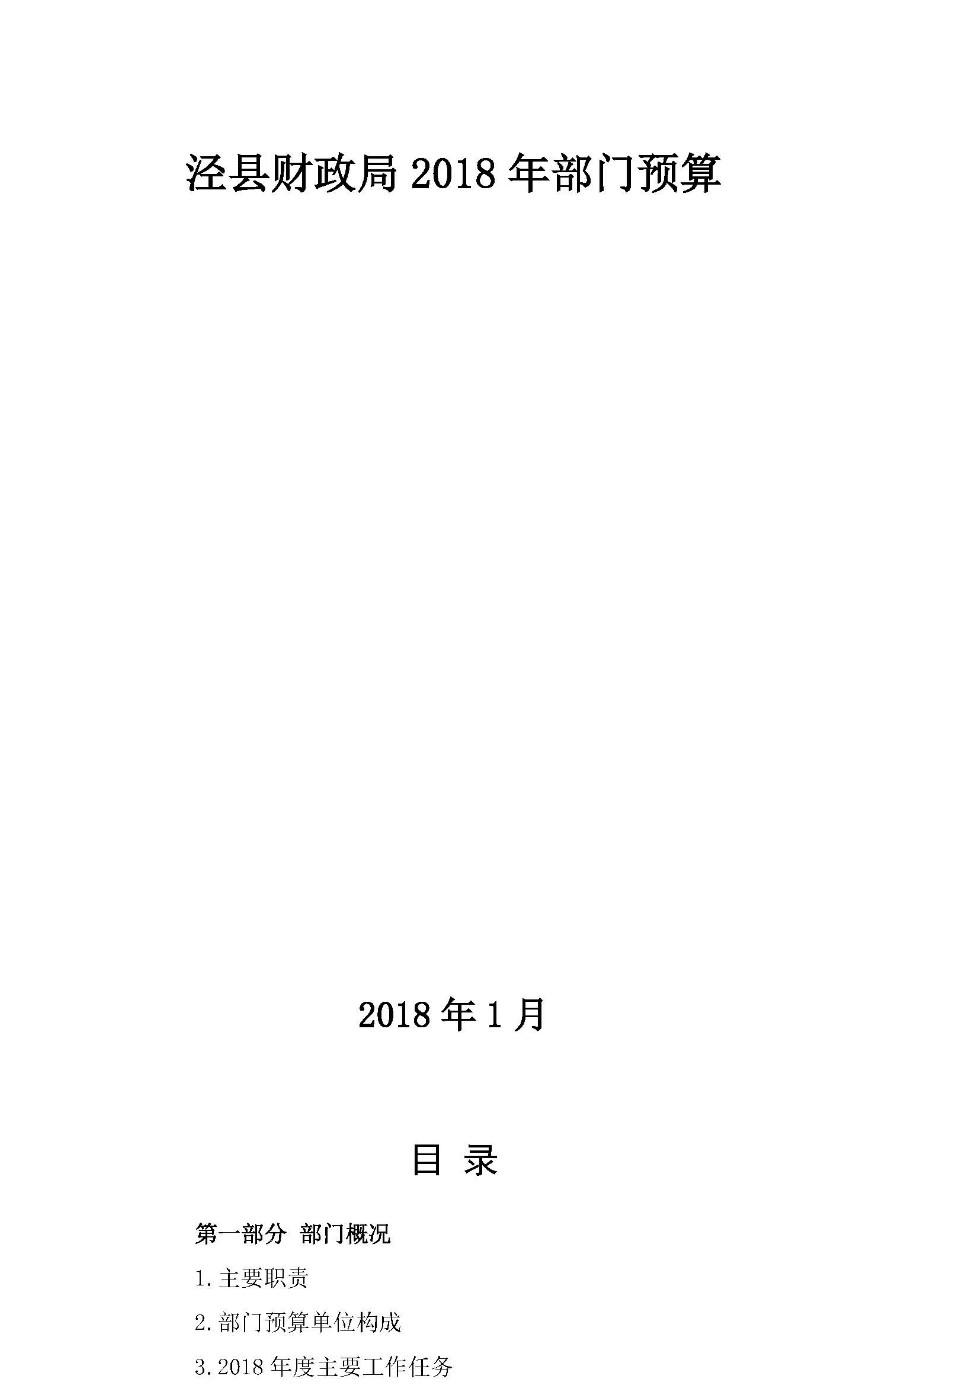 2018年部门预算公开说明修改_页面_01.jpg